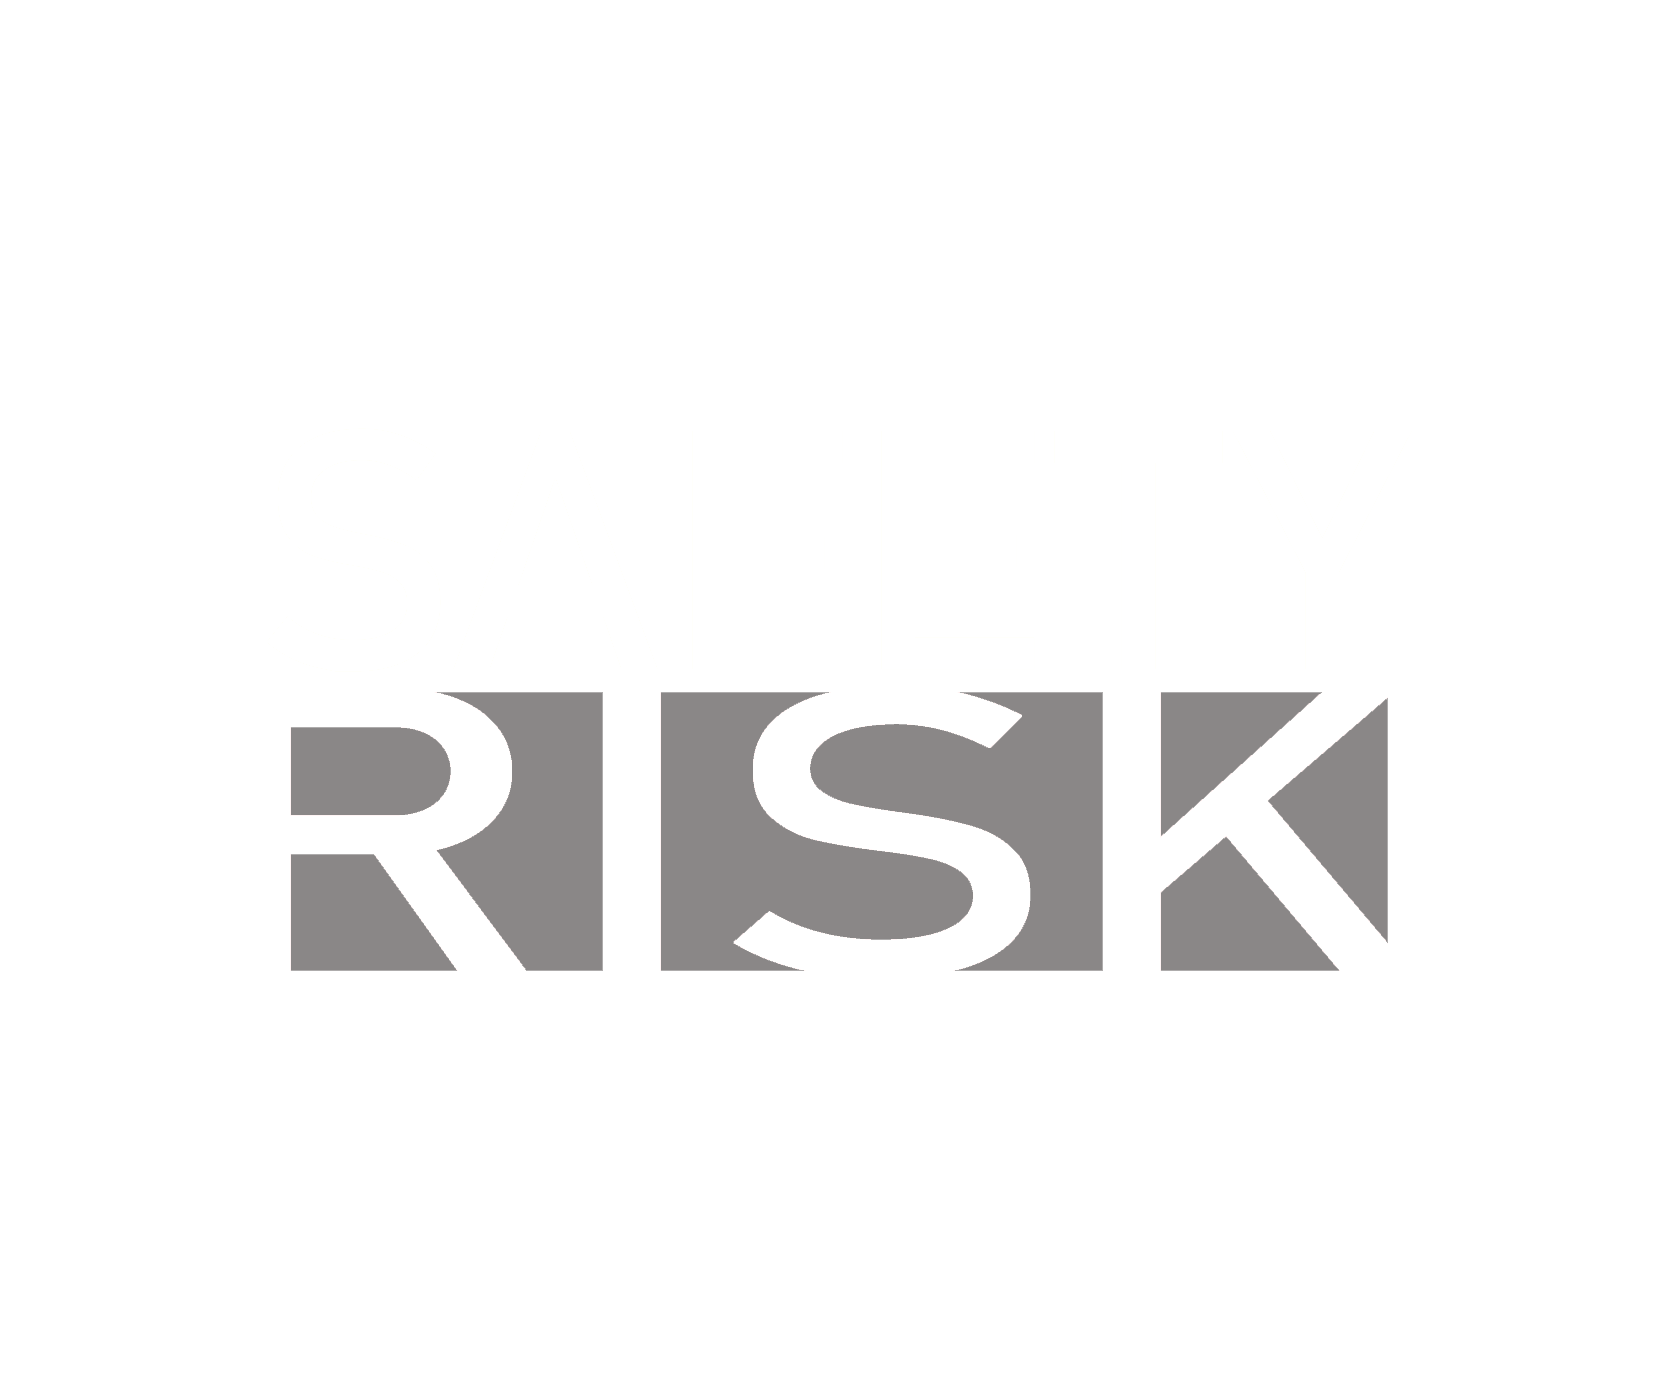 Safety Risk Ltda.